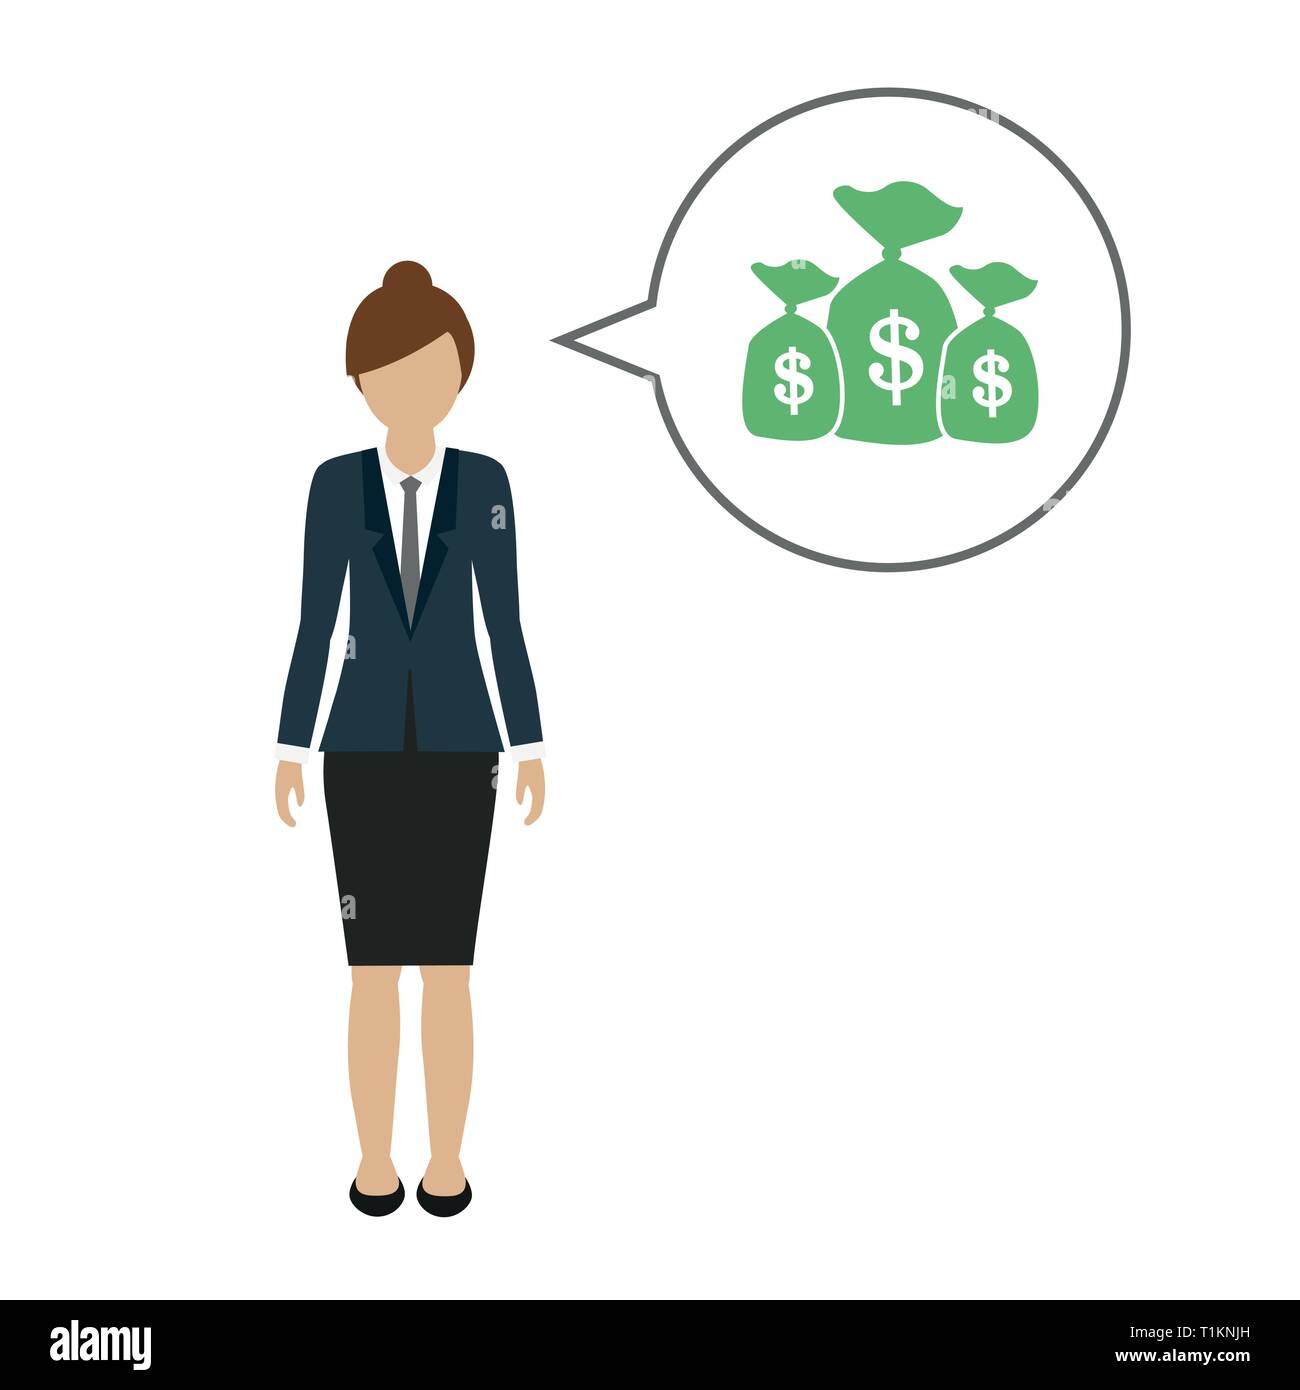 Business woman Charakter spricht über Geld dollar Vektor-illustration EPS 10. Stock Vektor